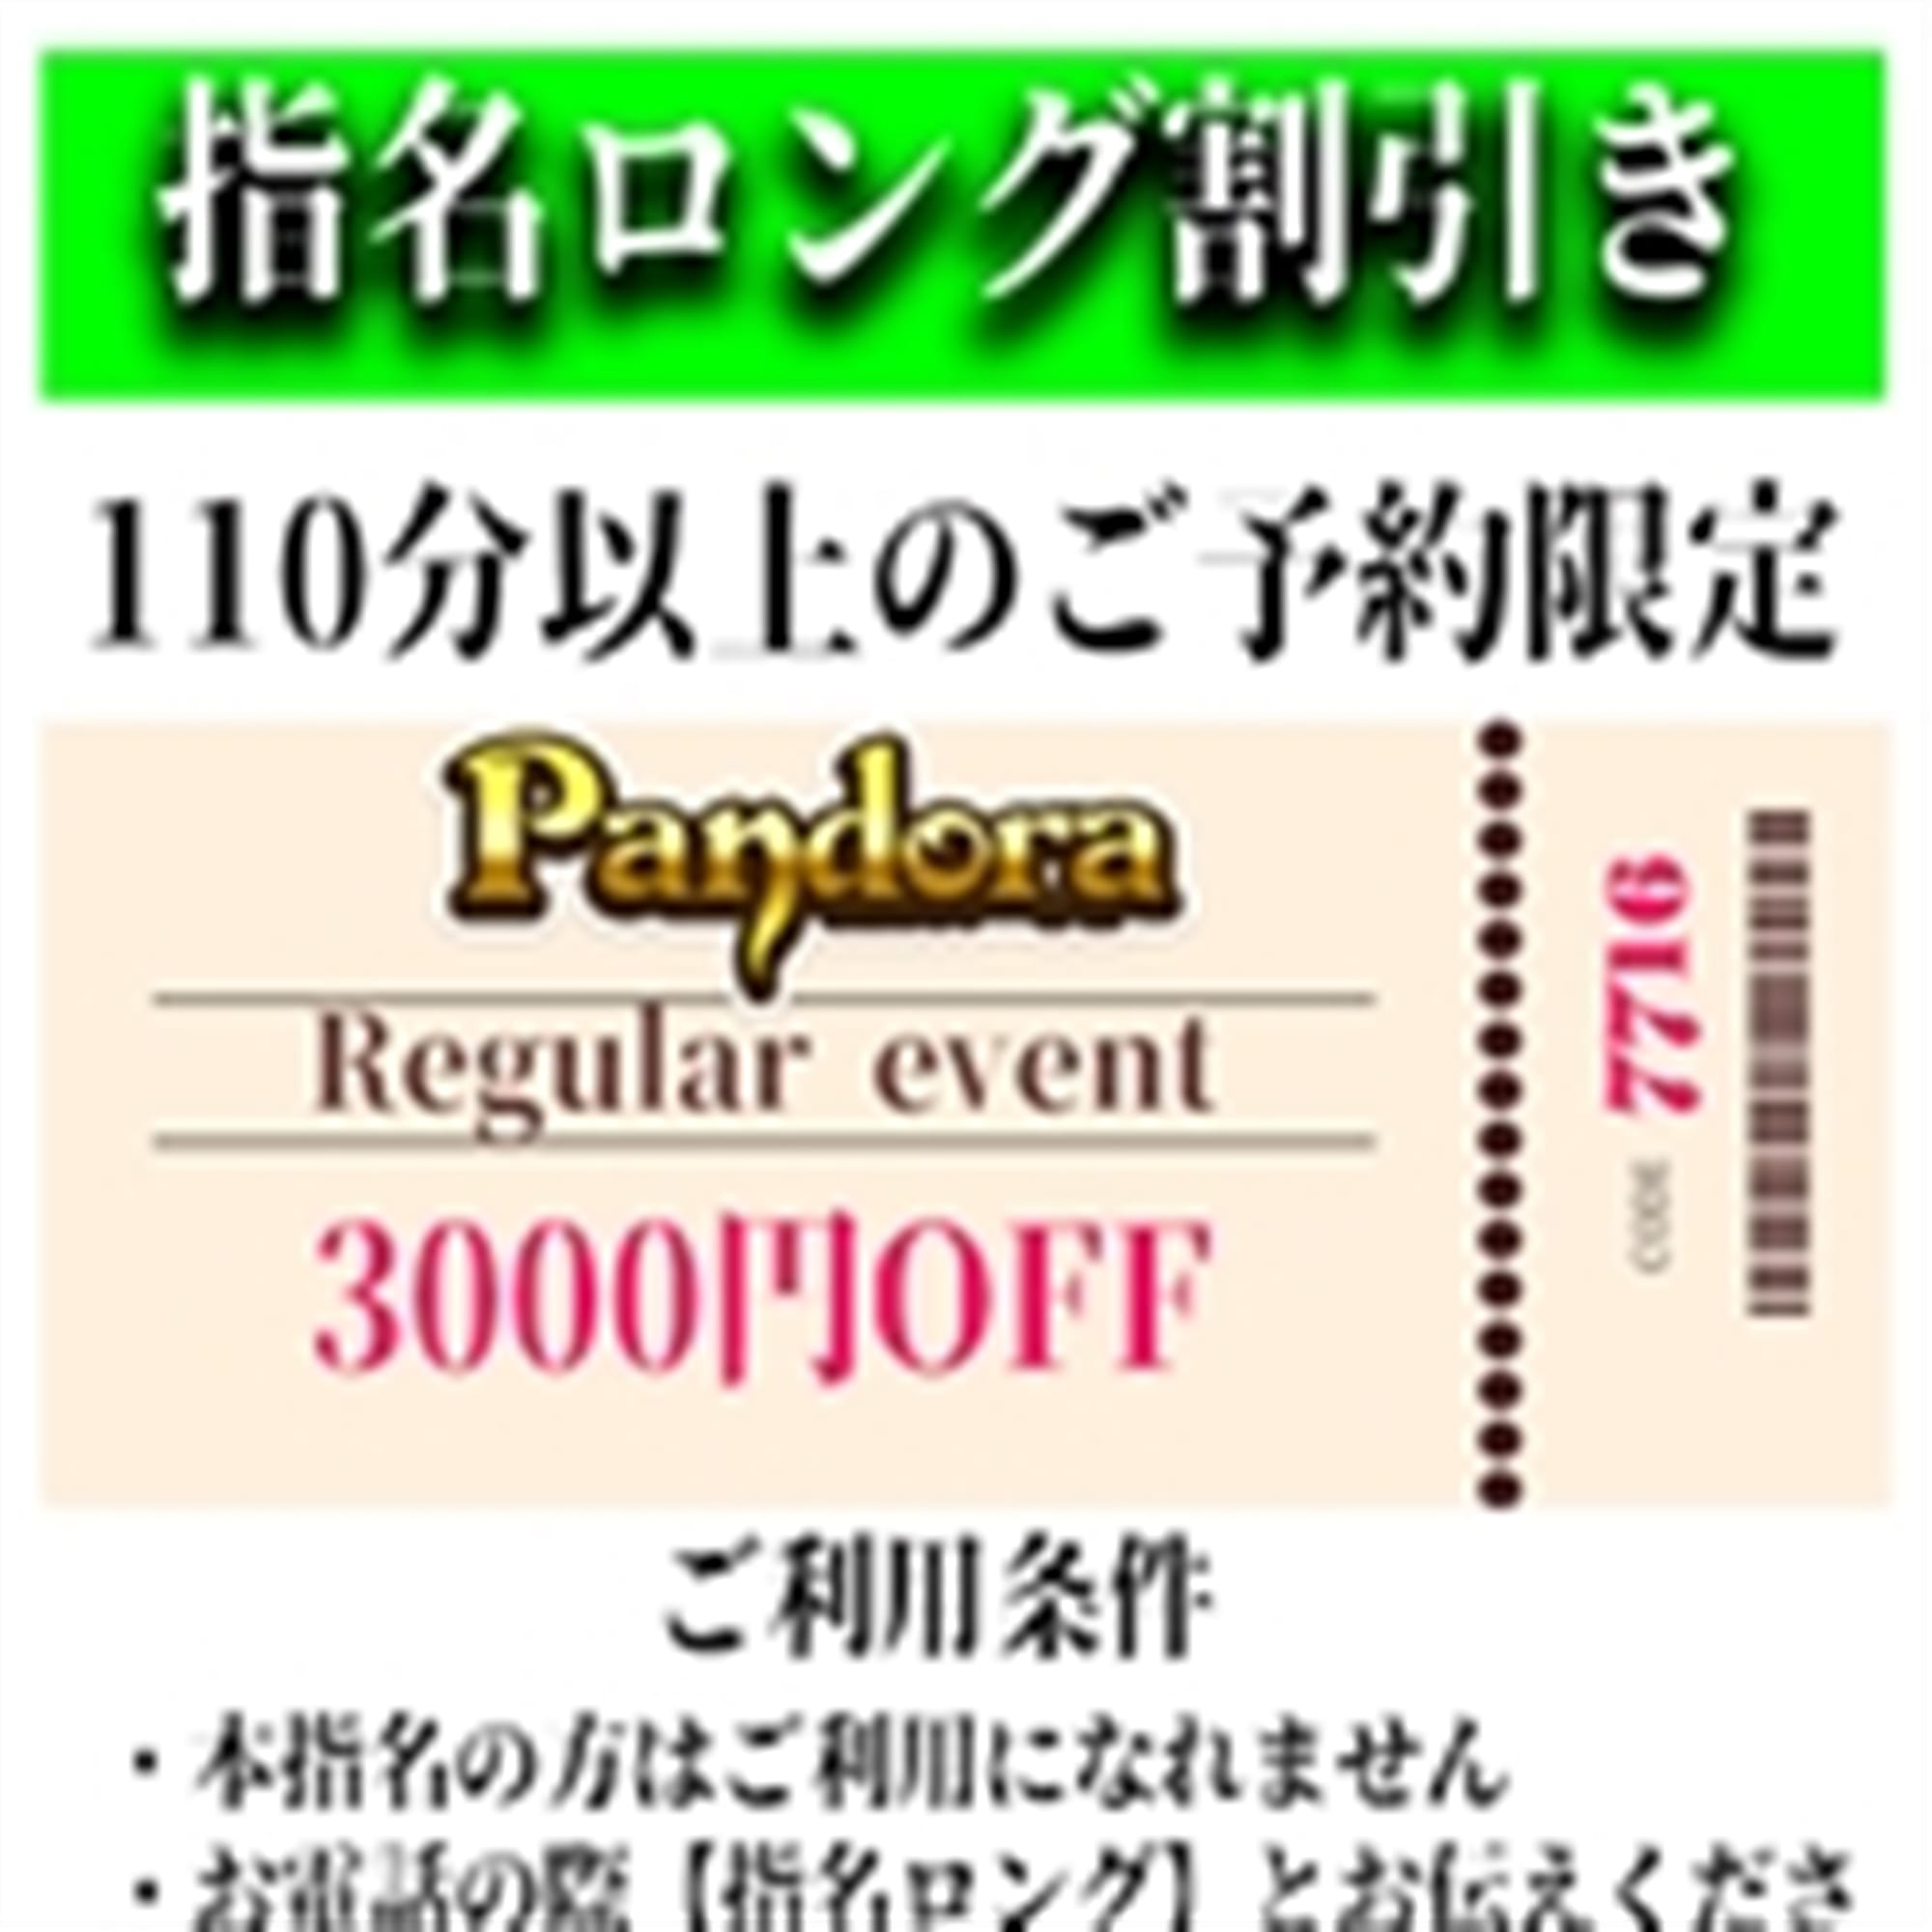 「ご指名のお客様も遊べるロングコース割引」04/26(金) 11:16 | Pandora(パンドラ)新潟のお得なニュース